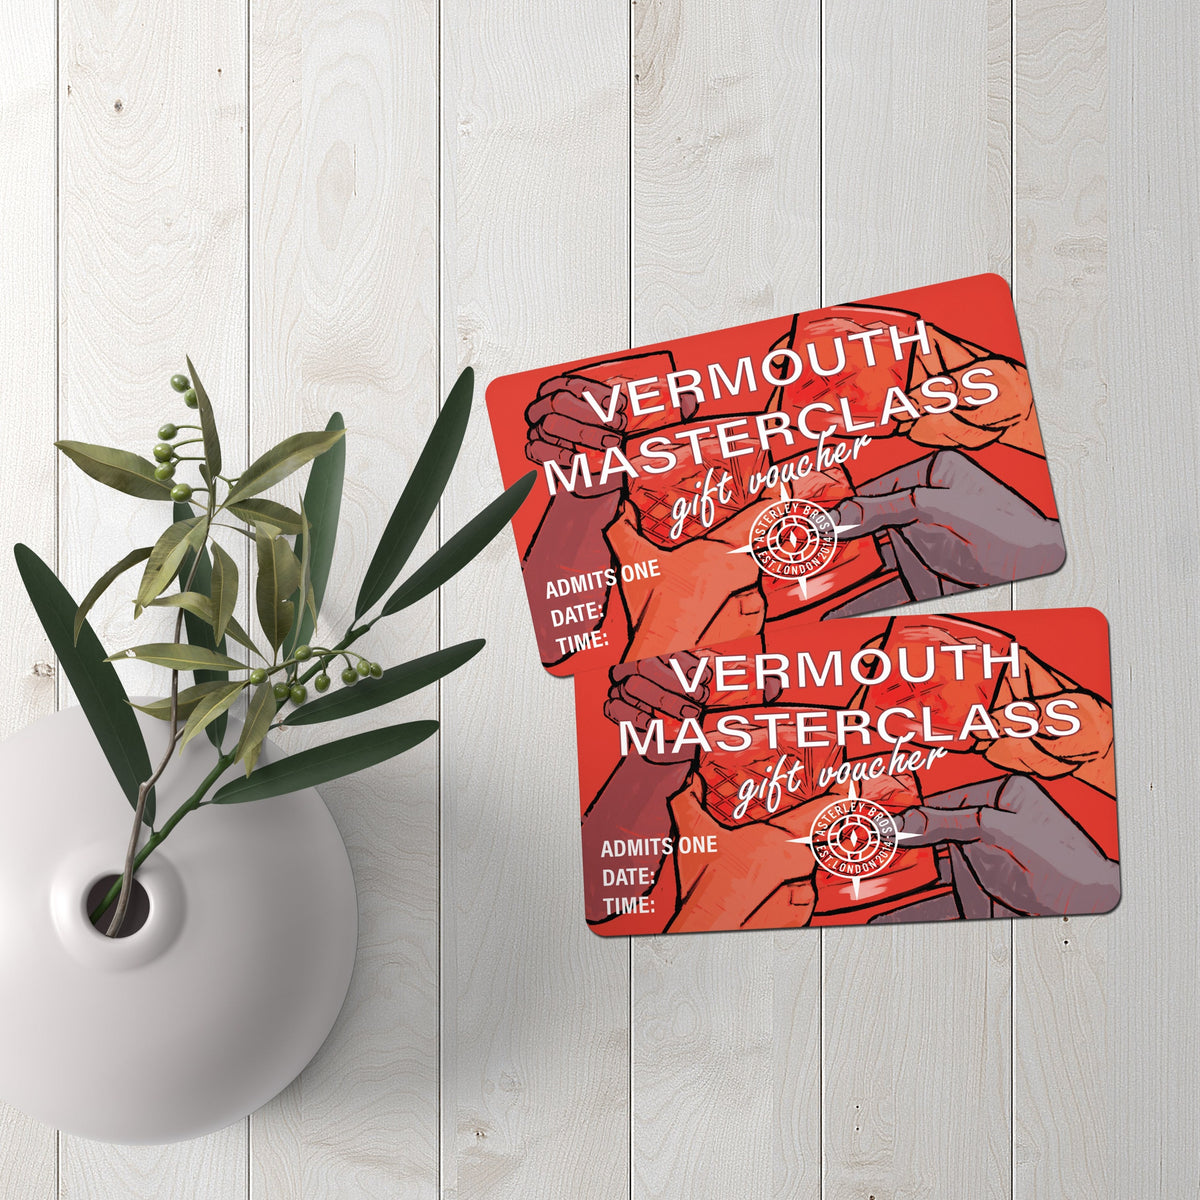 Vermouth Masterclass - Gift Vouchers